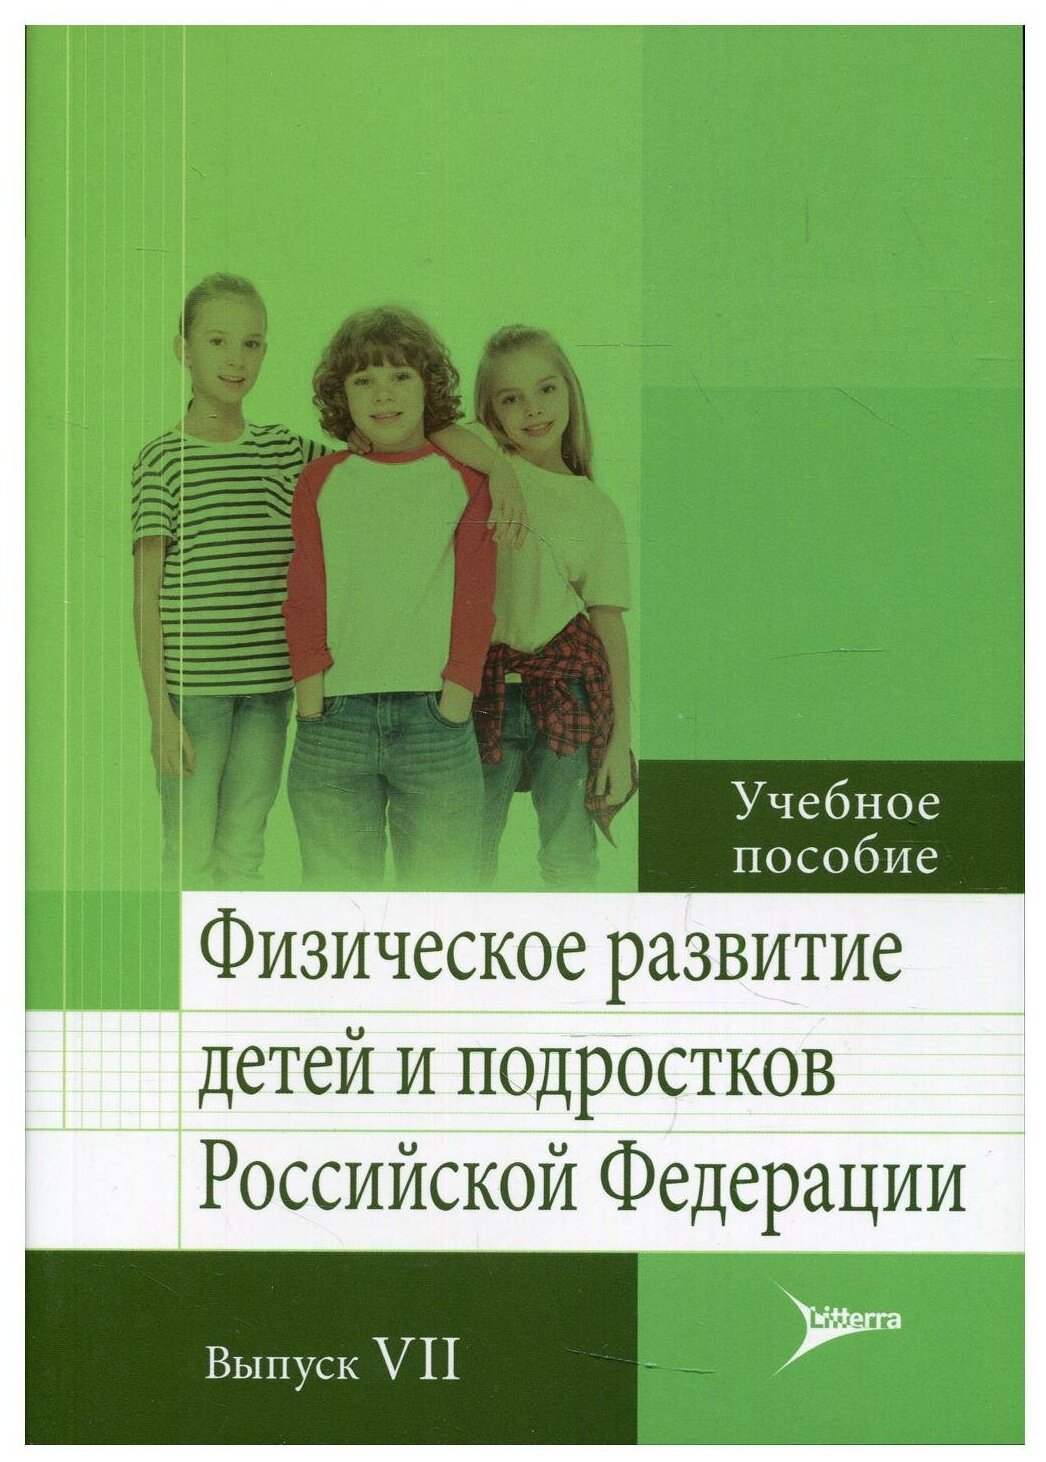 Физическое развитие детей и подростков РФ. Вып. VII: Учебное пособие